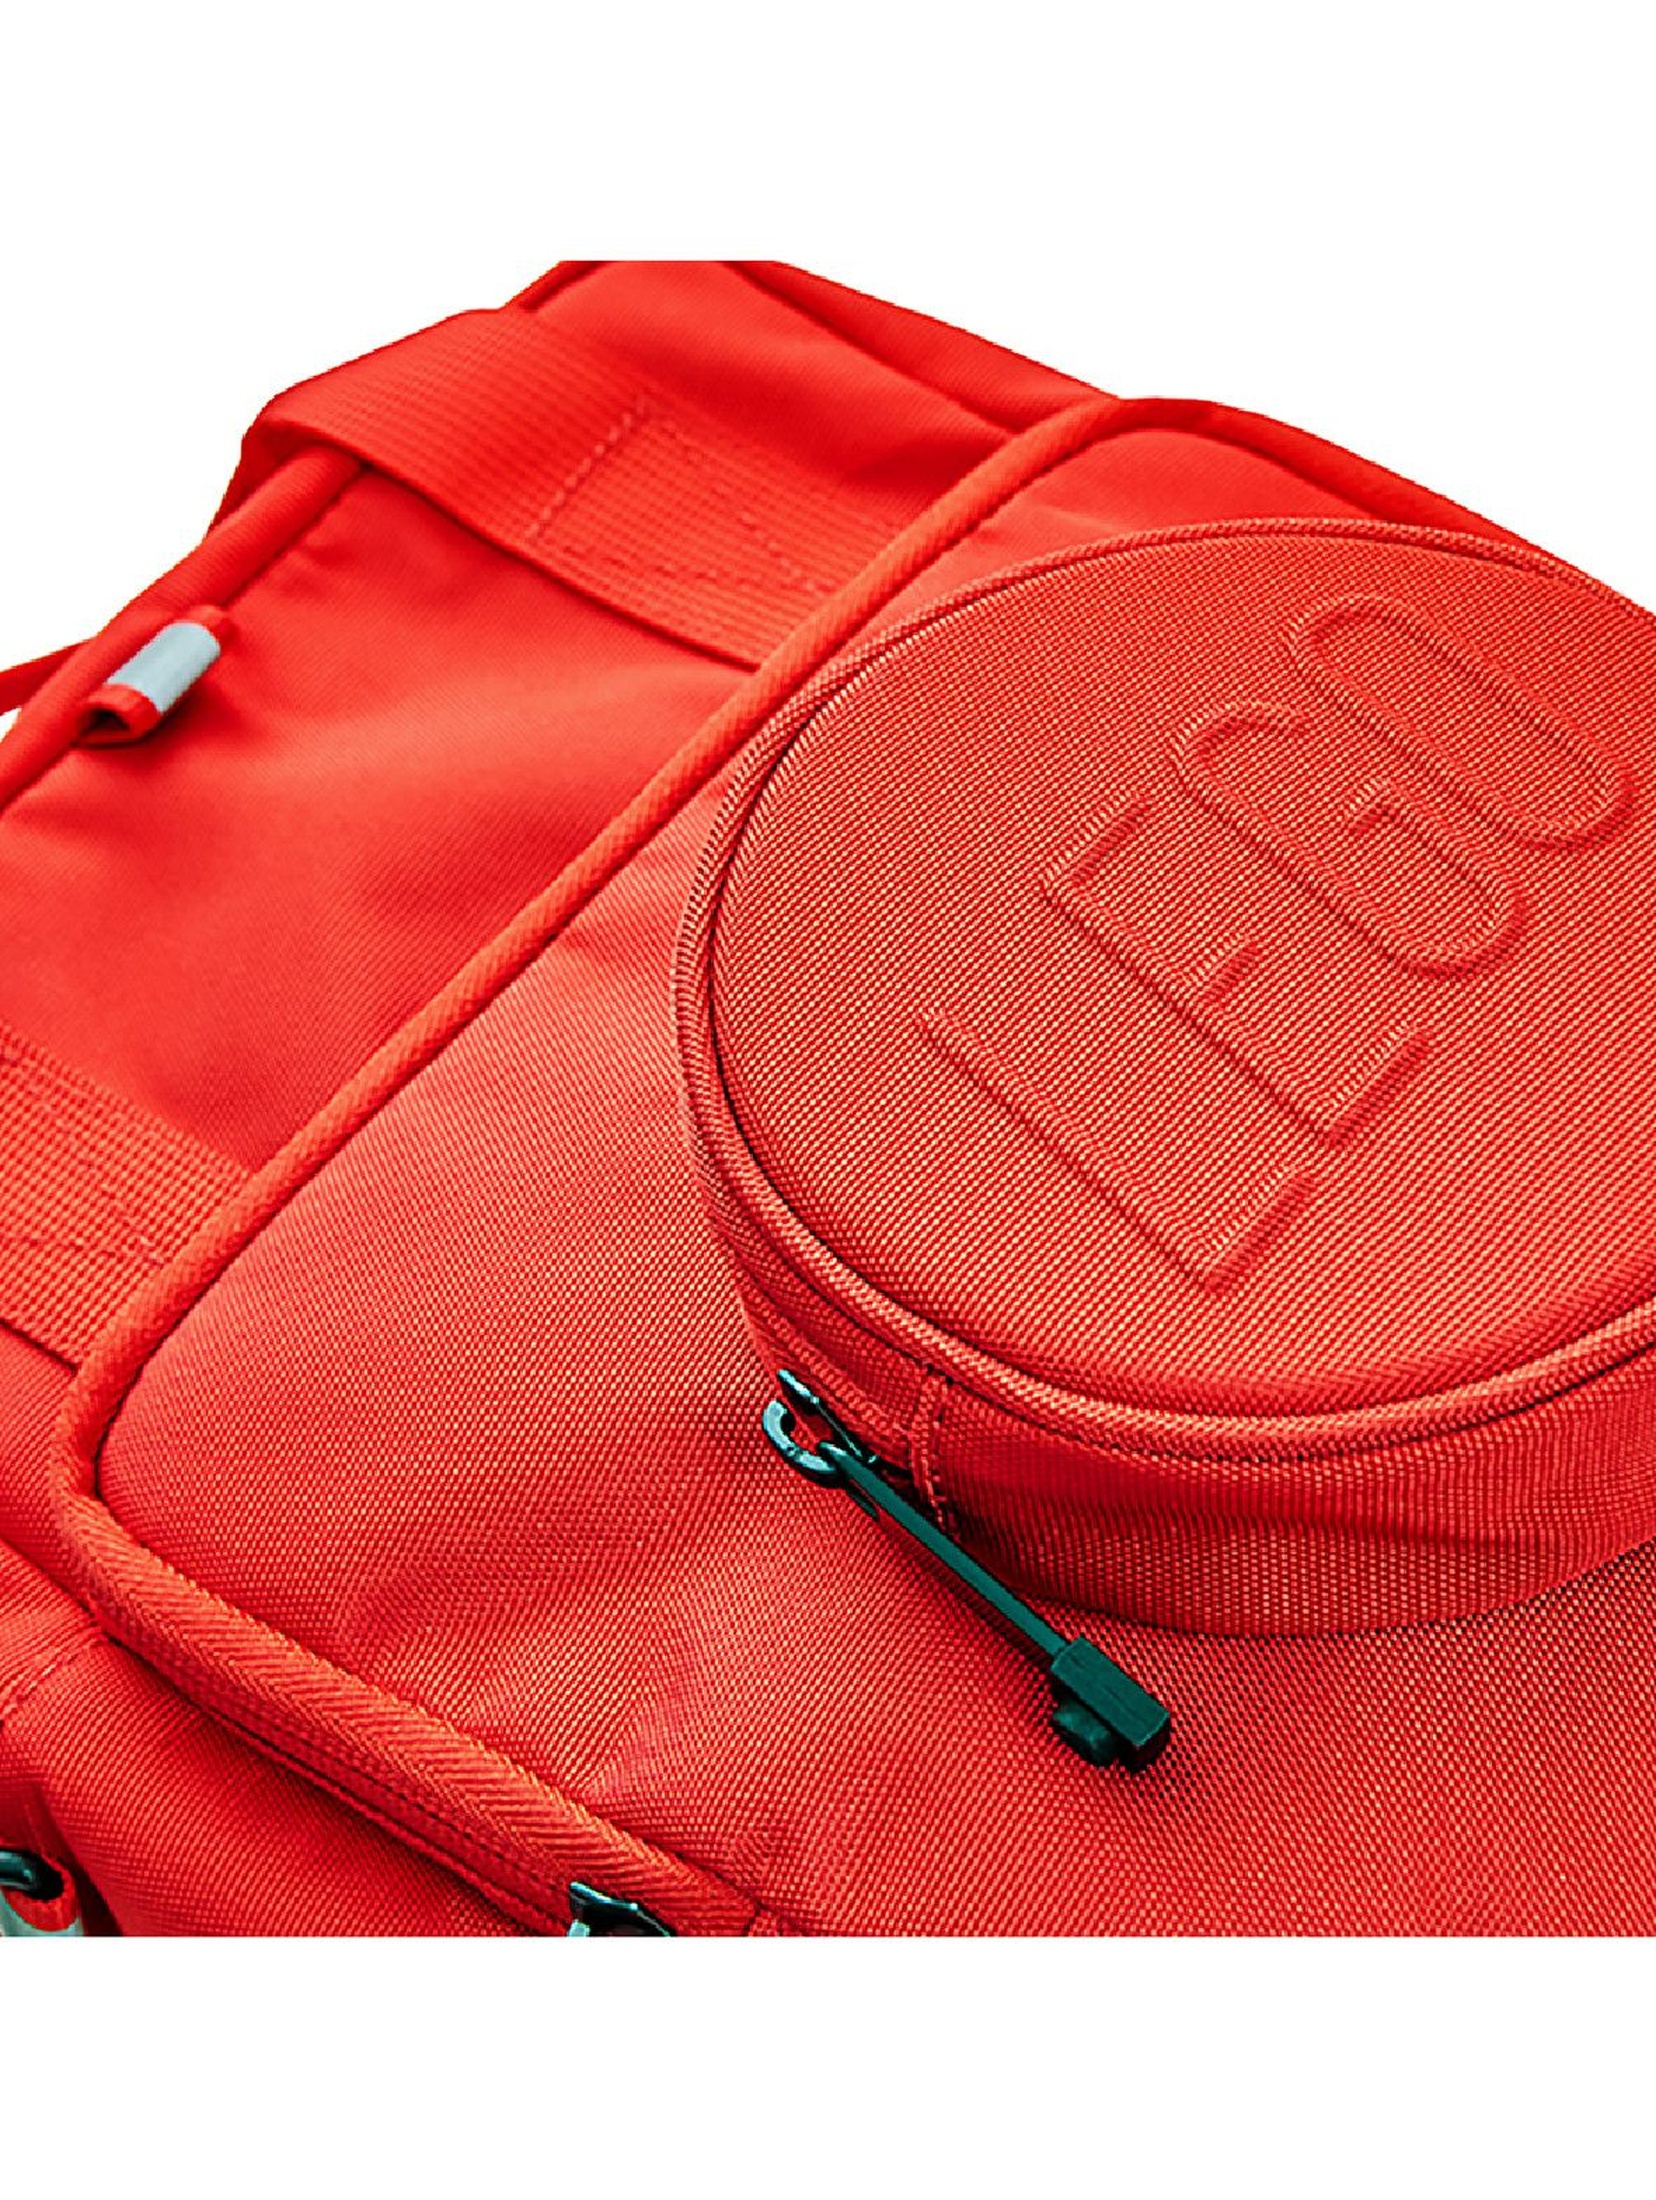 Plecak Brick 1x1 LEGO - kompaktowy plecak dziecięcy czerwony